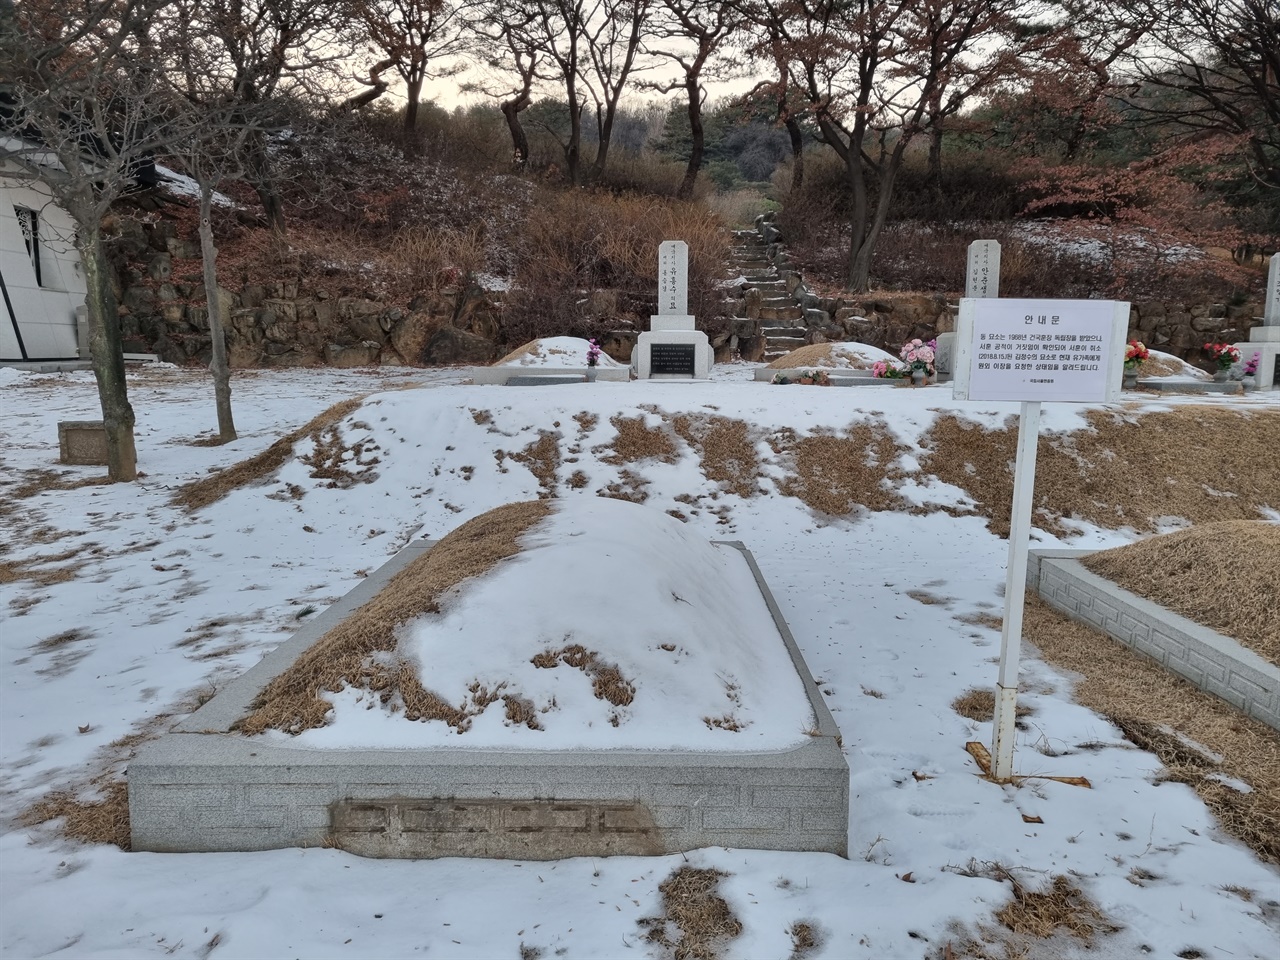 국립서울현충원 애국지사 묘역에 있는 김정수 묘. 서훈 취소 후 4년 만에 묘비가 철거되고 그 자리에 서훈 취소 및 유족에게 원외 이장을 요청한 상태임을 알리는 임시표지판이 대신 세워져 있다.